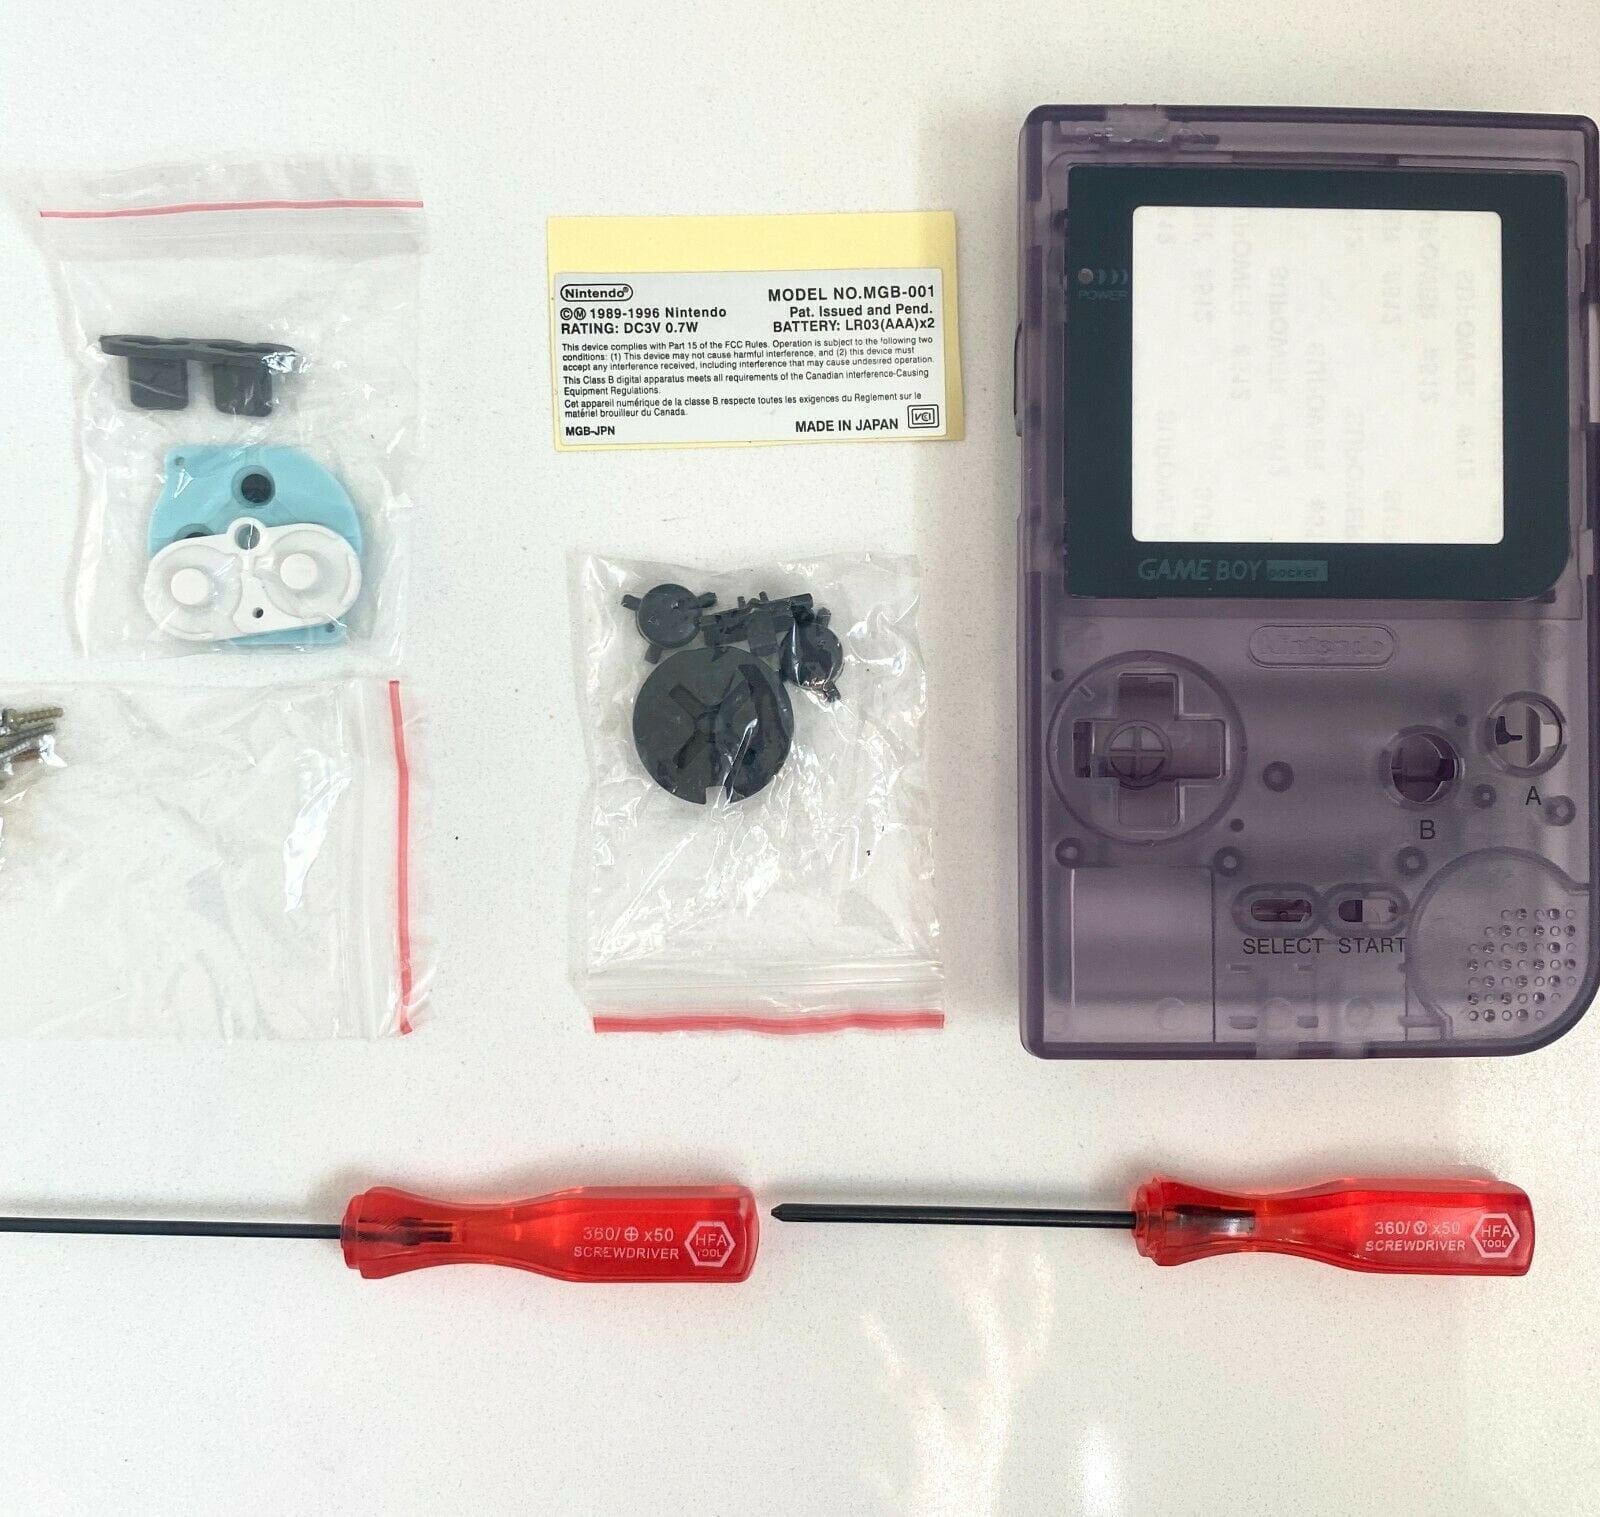 Nintendo Game Boy Pocket Clear